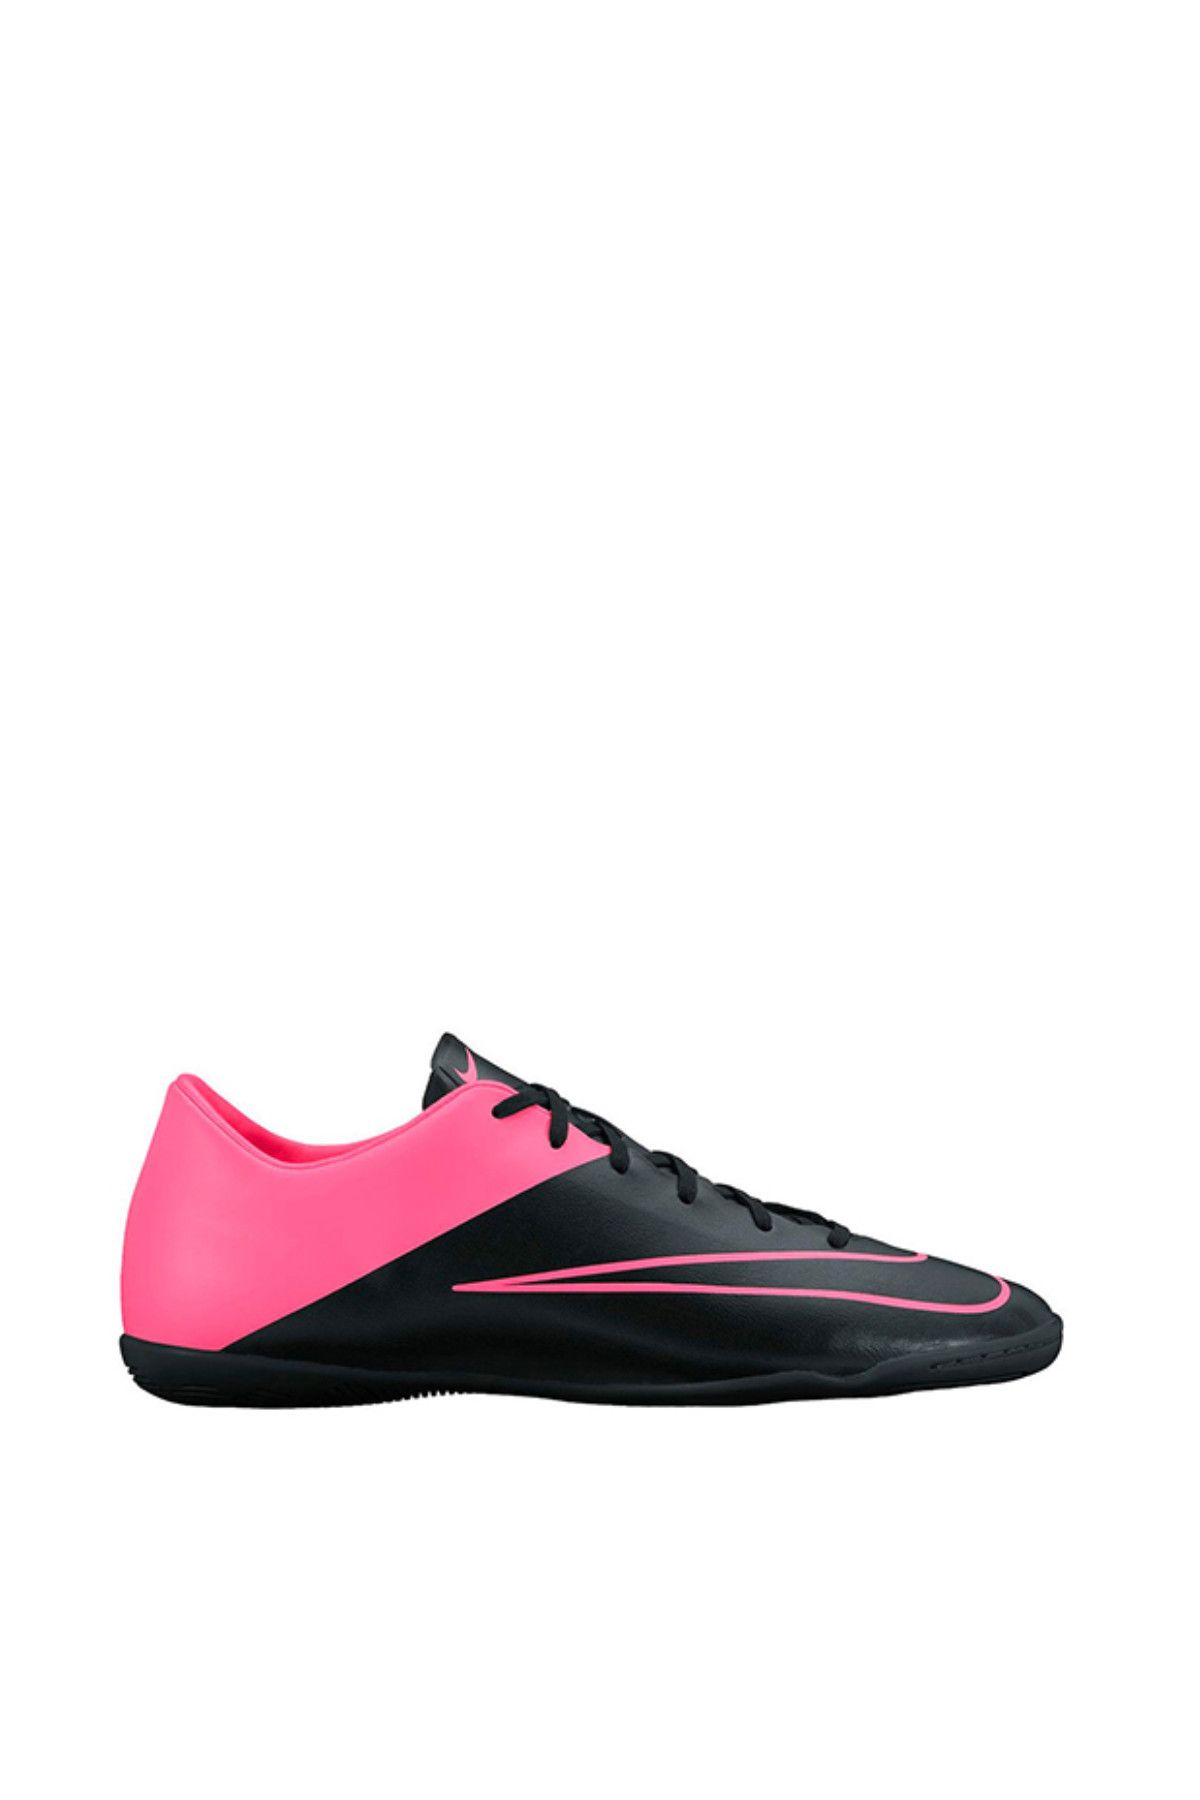 Nike Erkek Futsal Ayakkabısı - Mercurial Victory IC - 651635-006